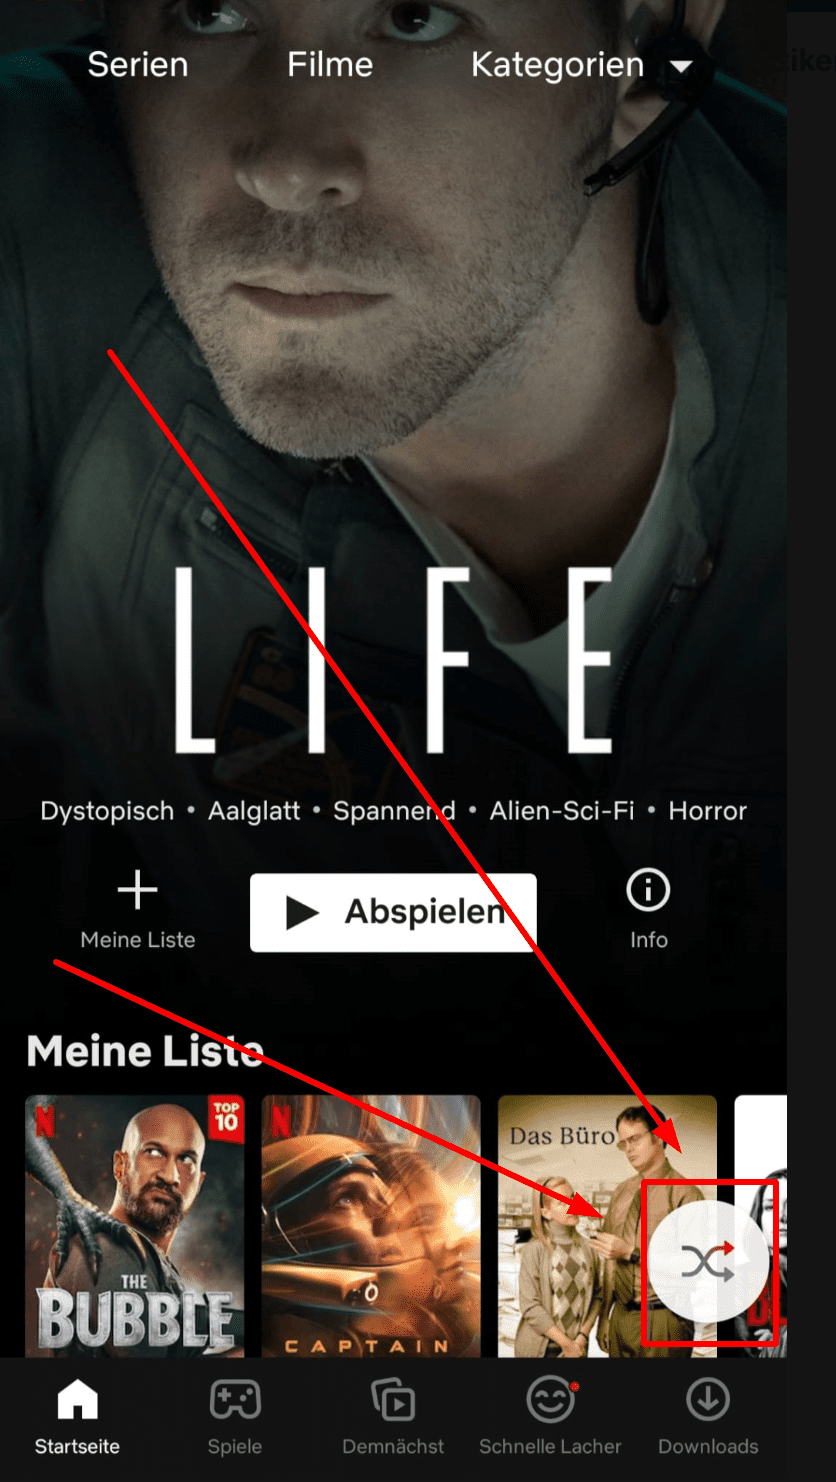 Netflix funktion ueberrasch mich